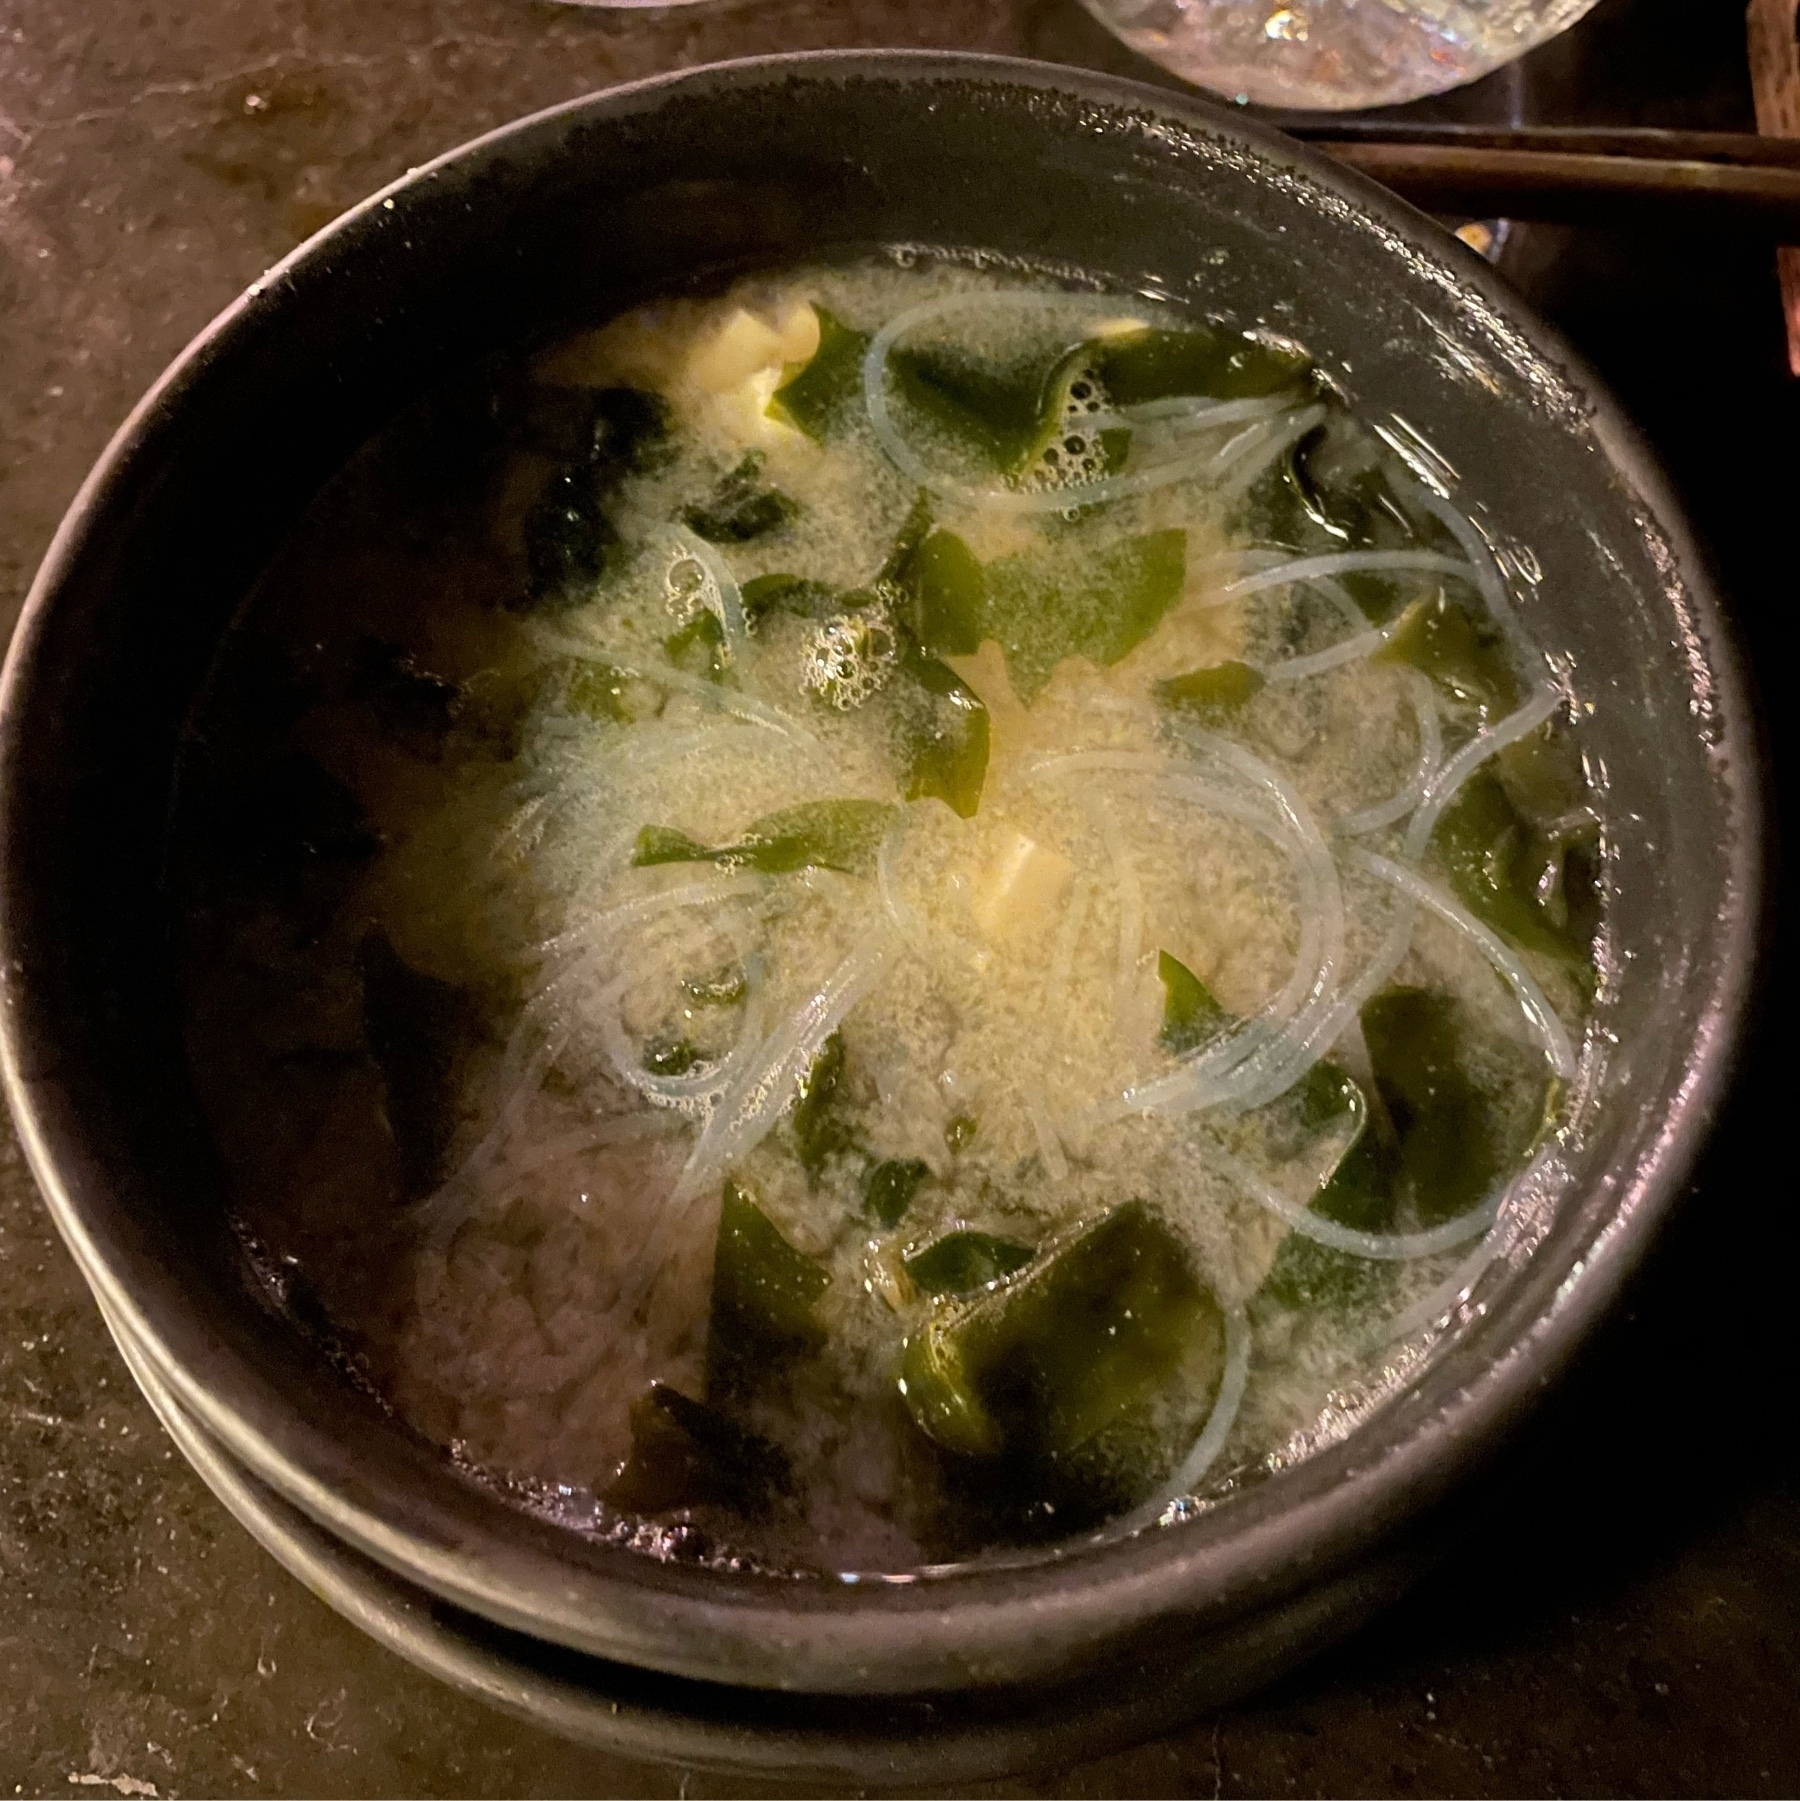 A light miso soup